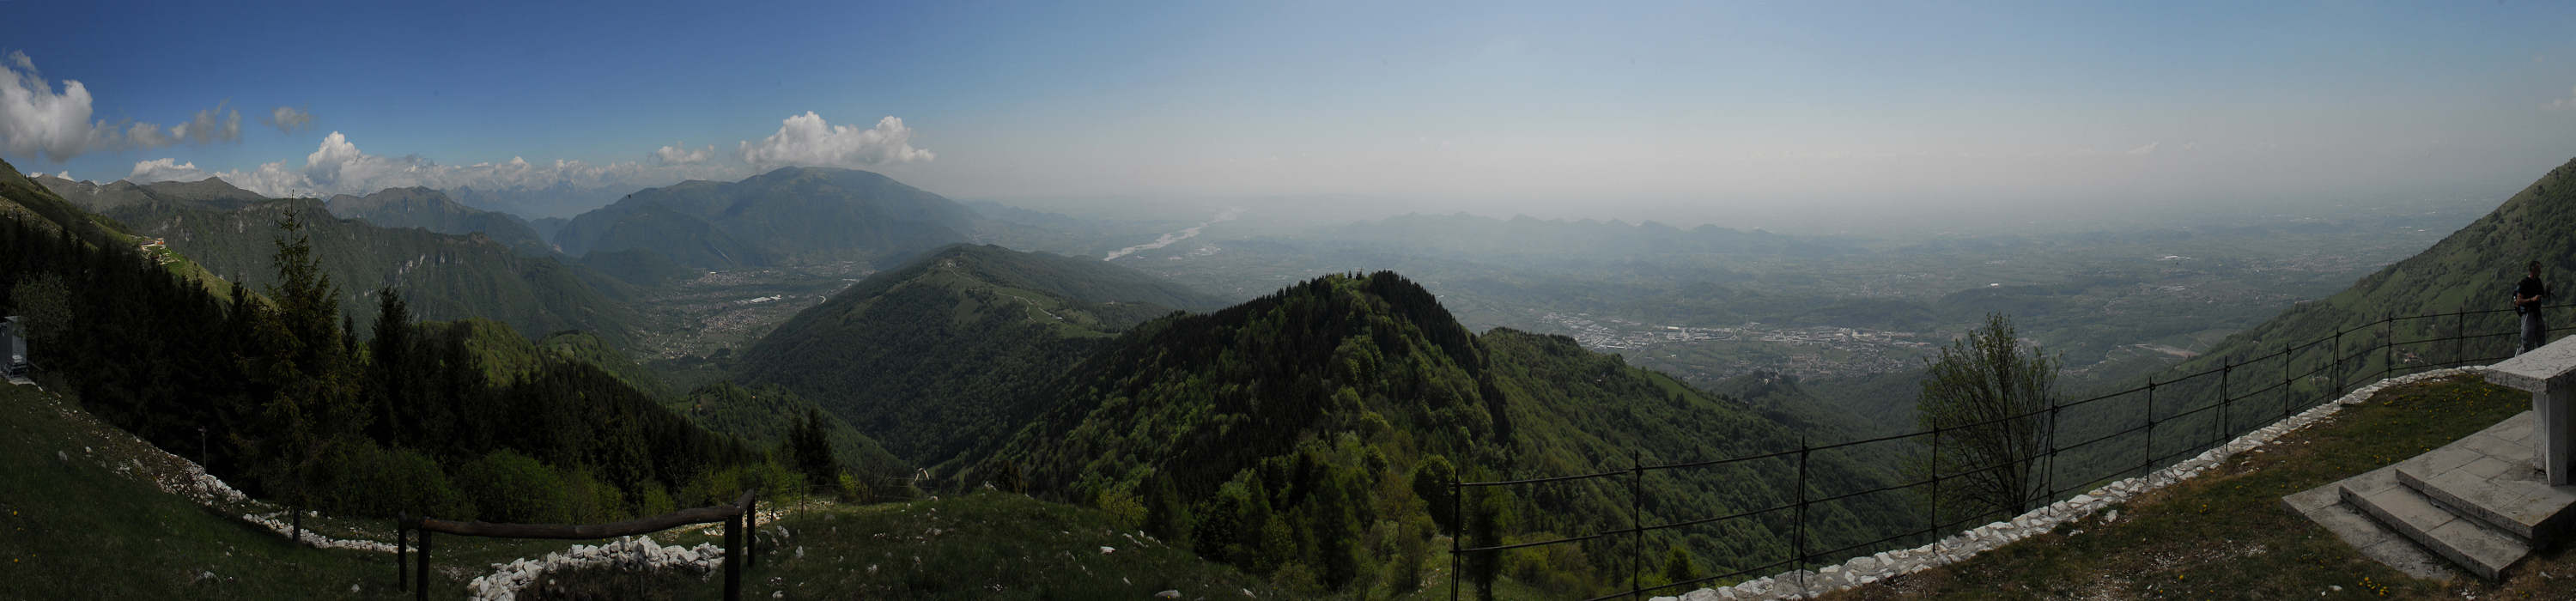 cima Palon, Possagno, Alano di Piave - fotografia panoramica